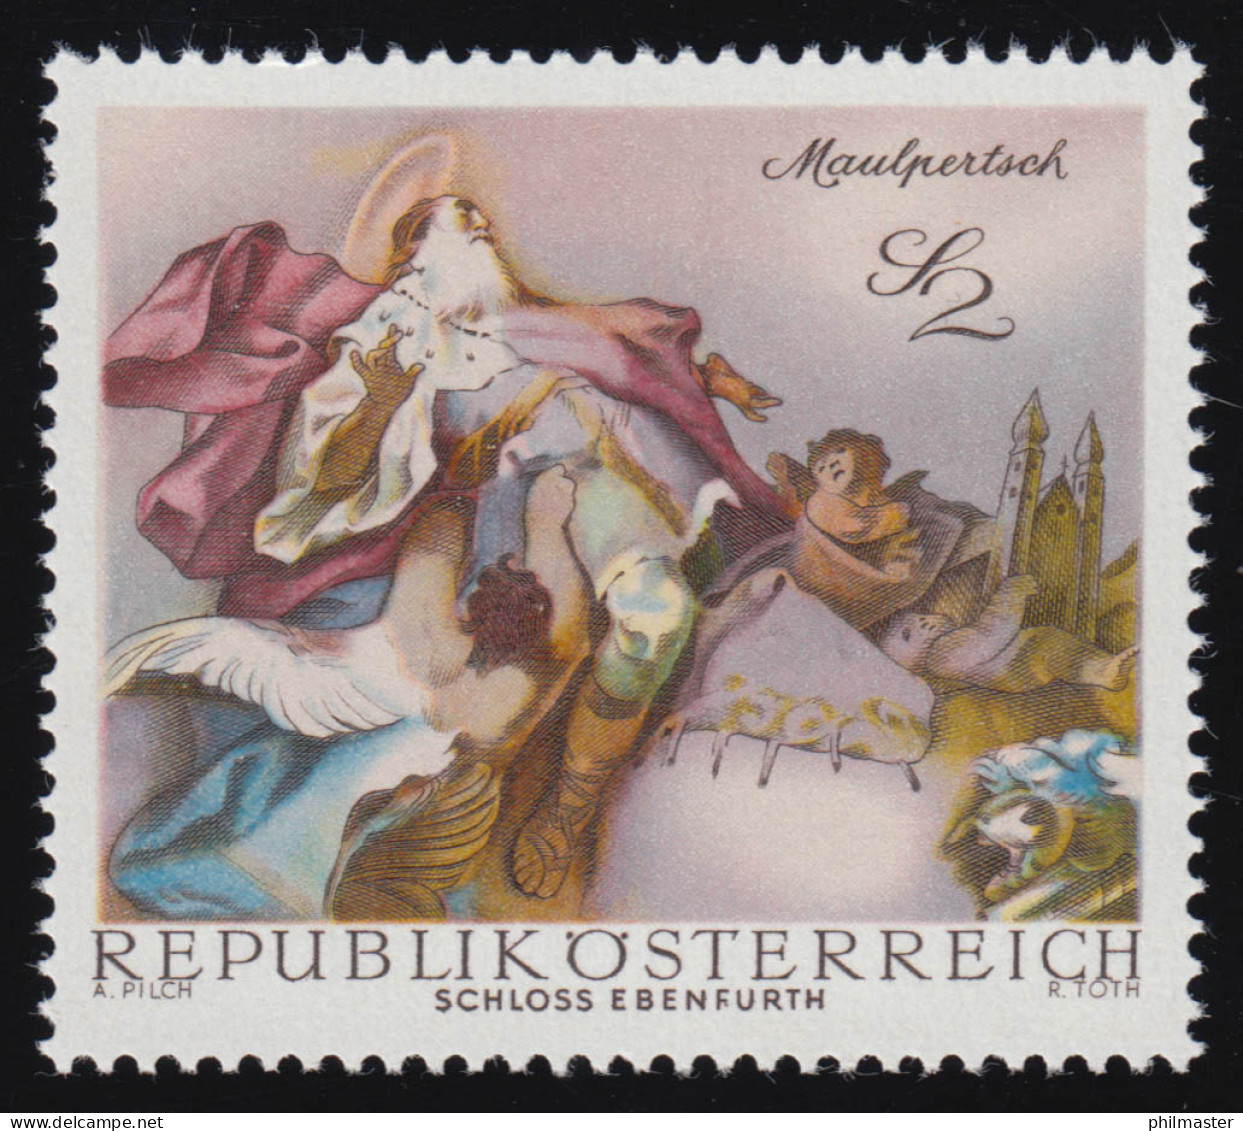 1282 Barocke Fresken, Apotheose Hl. Leopold Schloss Ebenfurth 2 S, Postfrisch ** - Ungebraucht